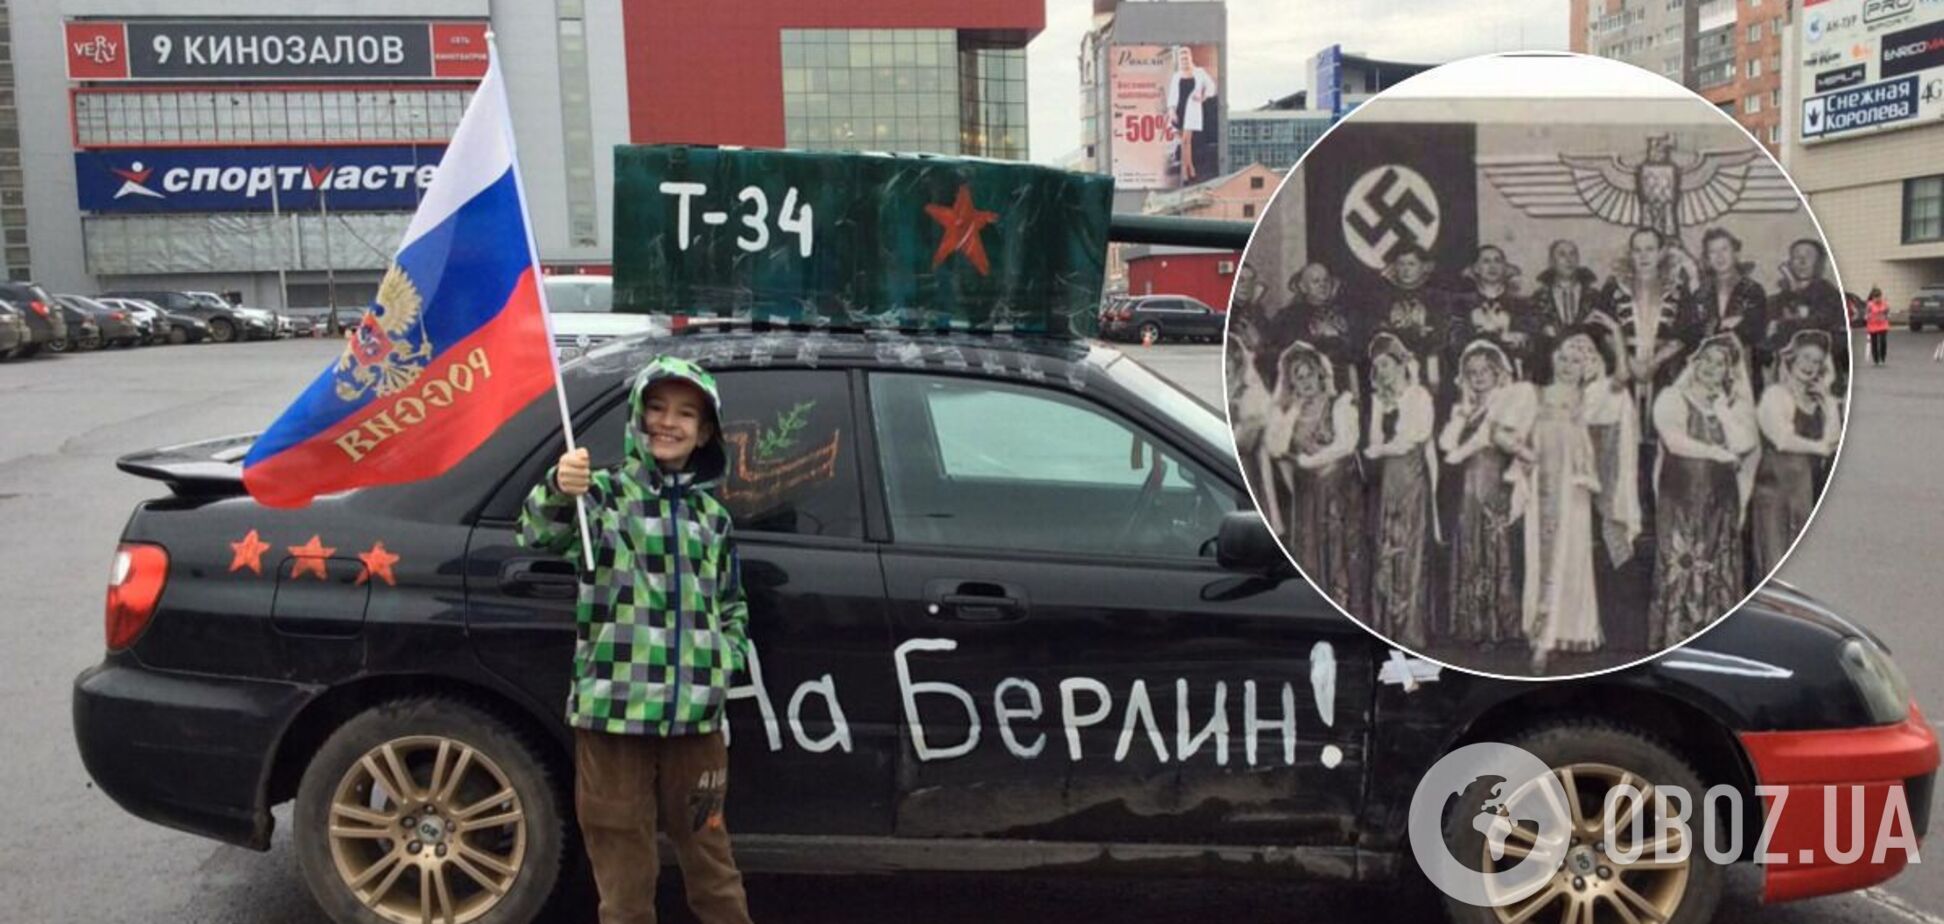 Историки нашли архивное фото, которое противоречит современной пропаганде РФ